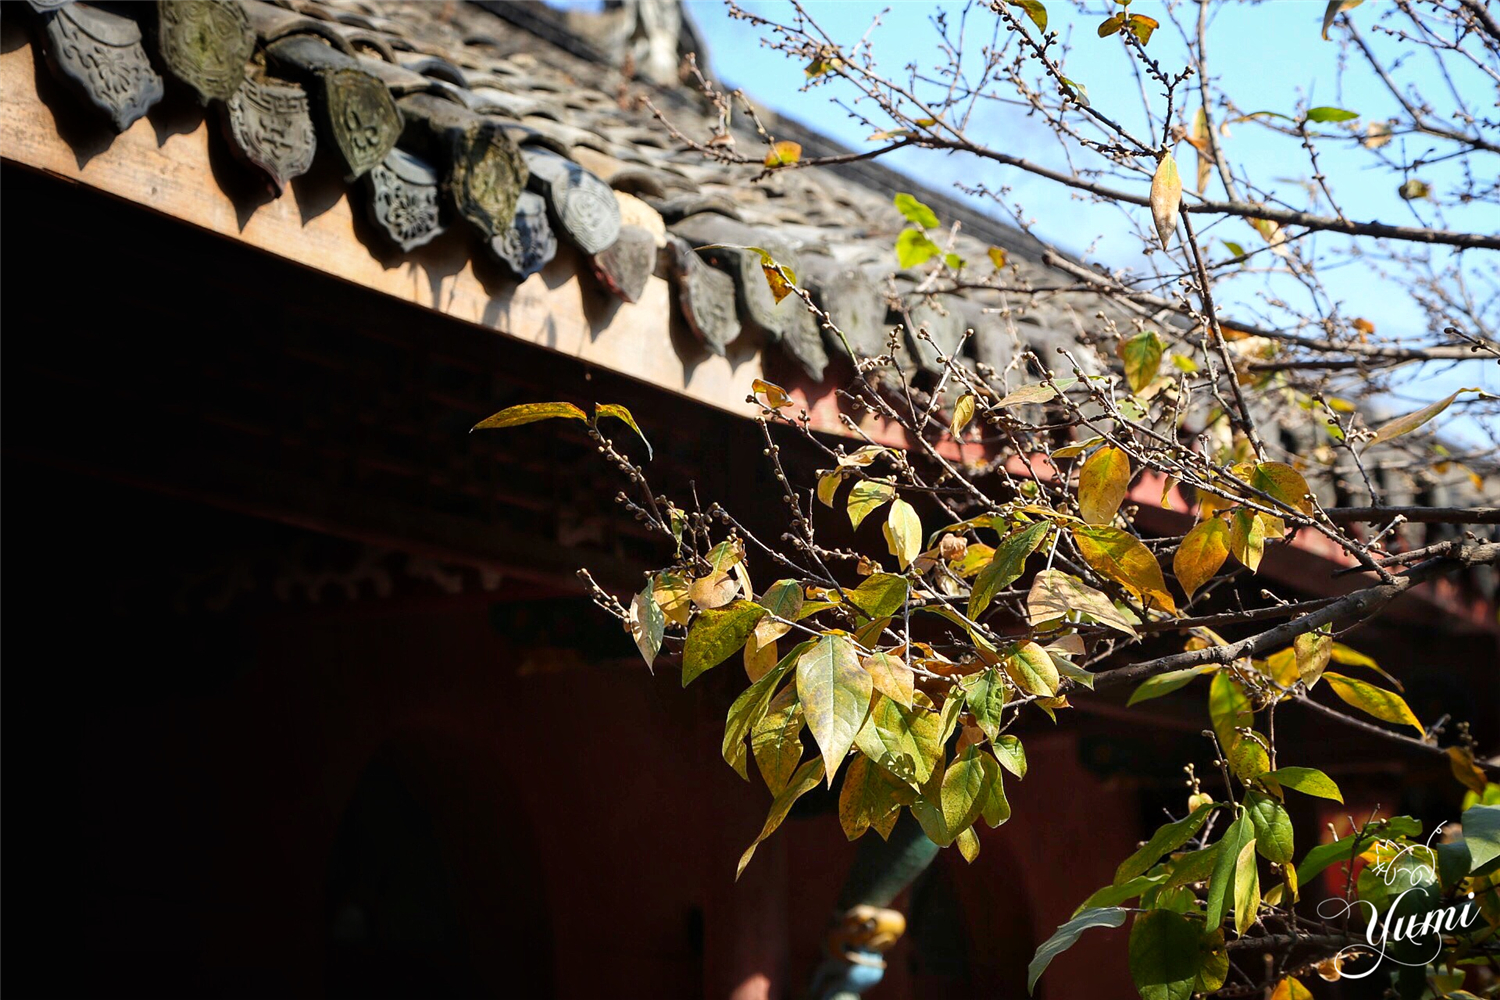 琅琊山这个被称为皖东明珠的地方，究竟有多美引得无数文人称赞？